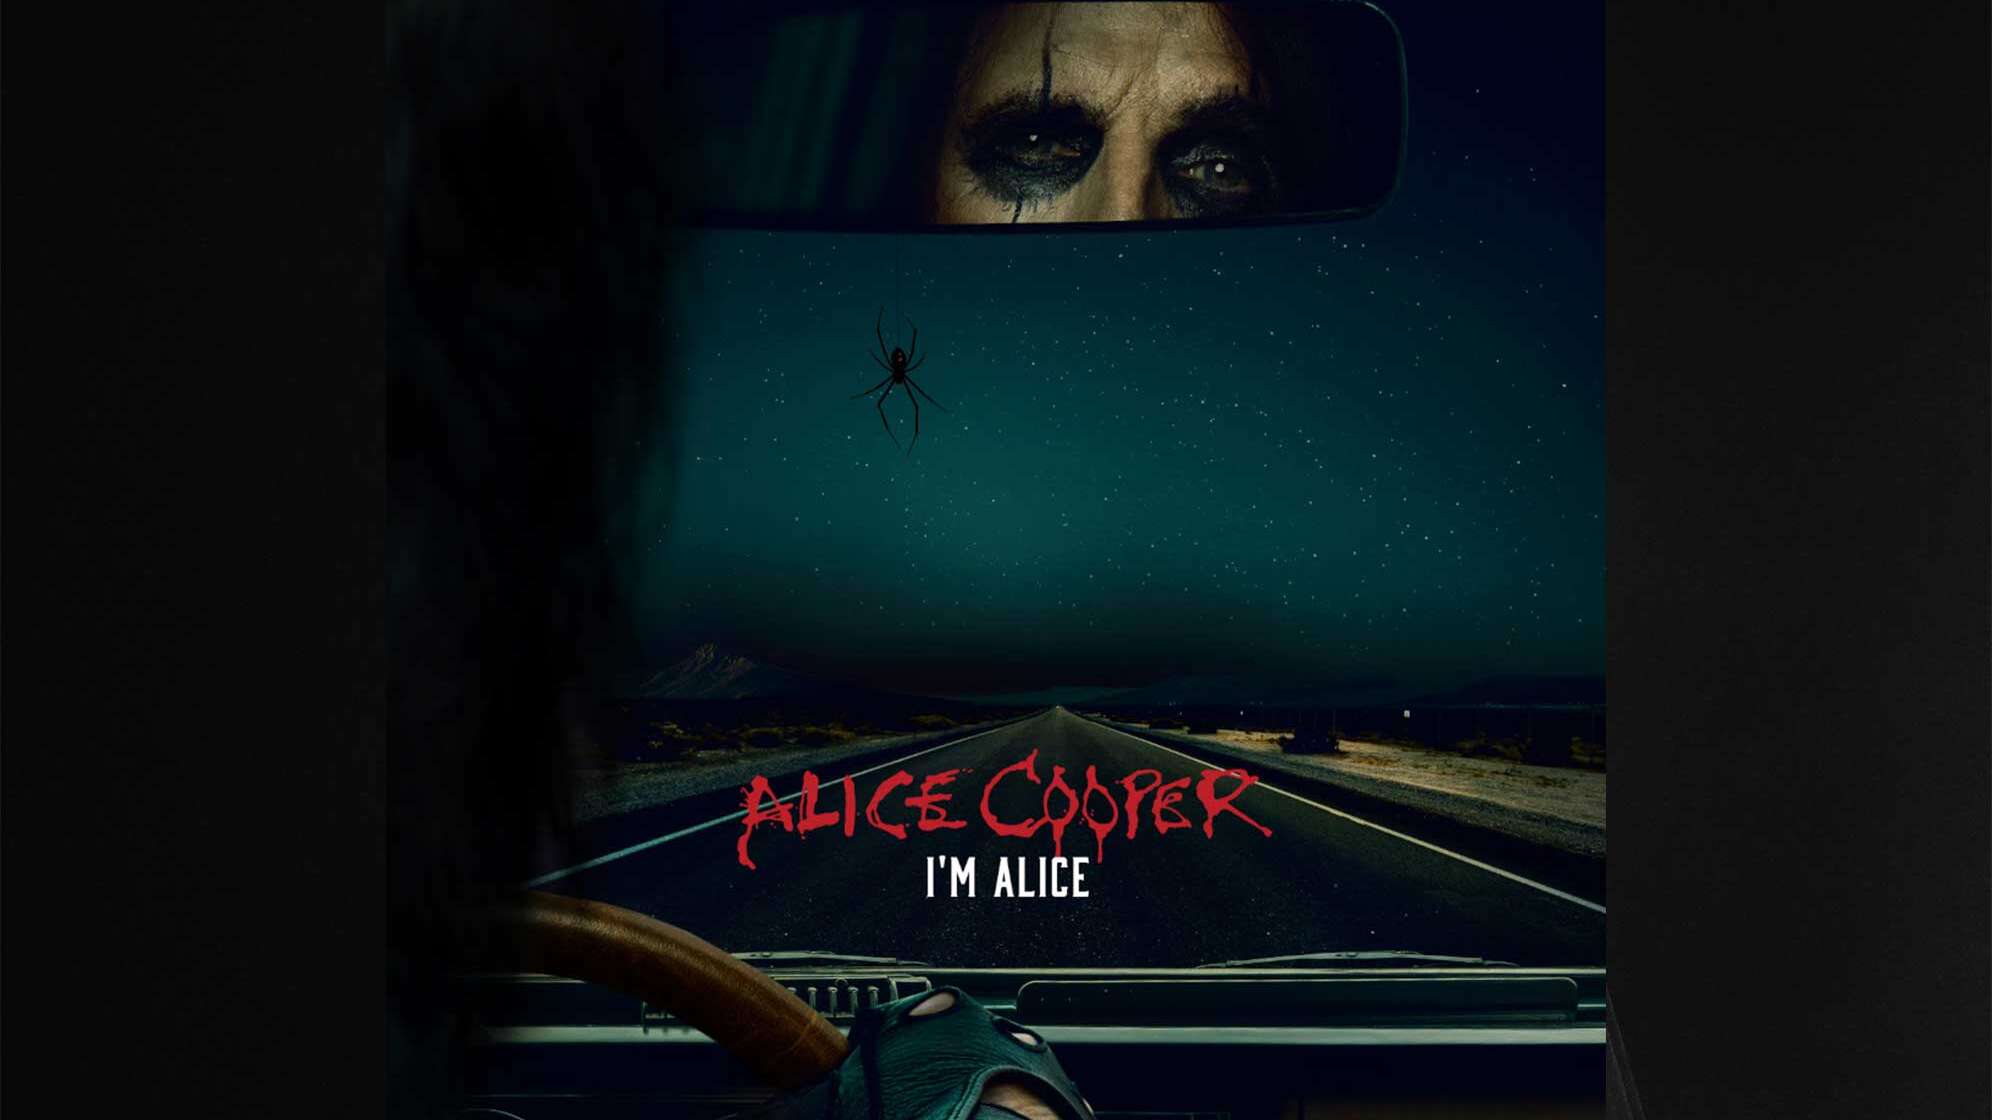 Single Cover vom Song "I'm Alice" von Alice Cooper mit seinen Augen im Rückspiegel und dem Blick aus dem Auto